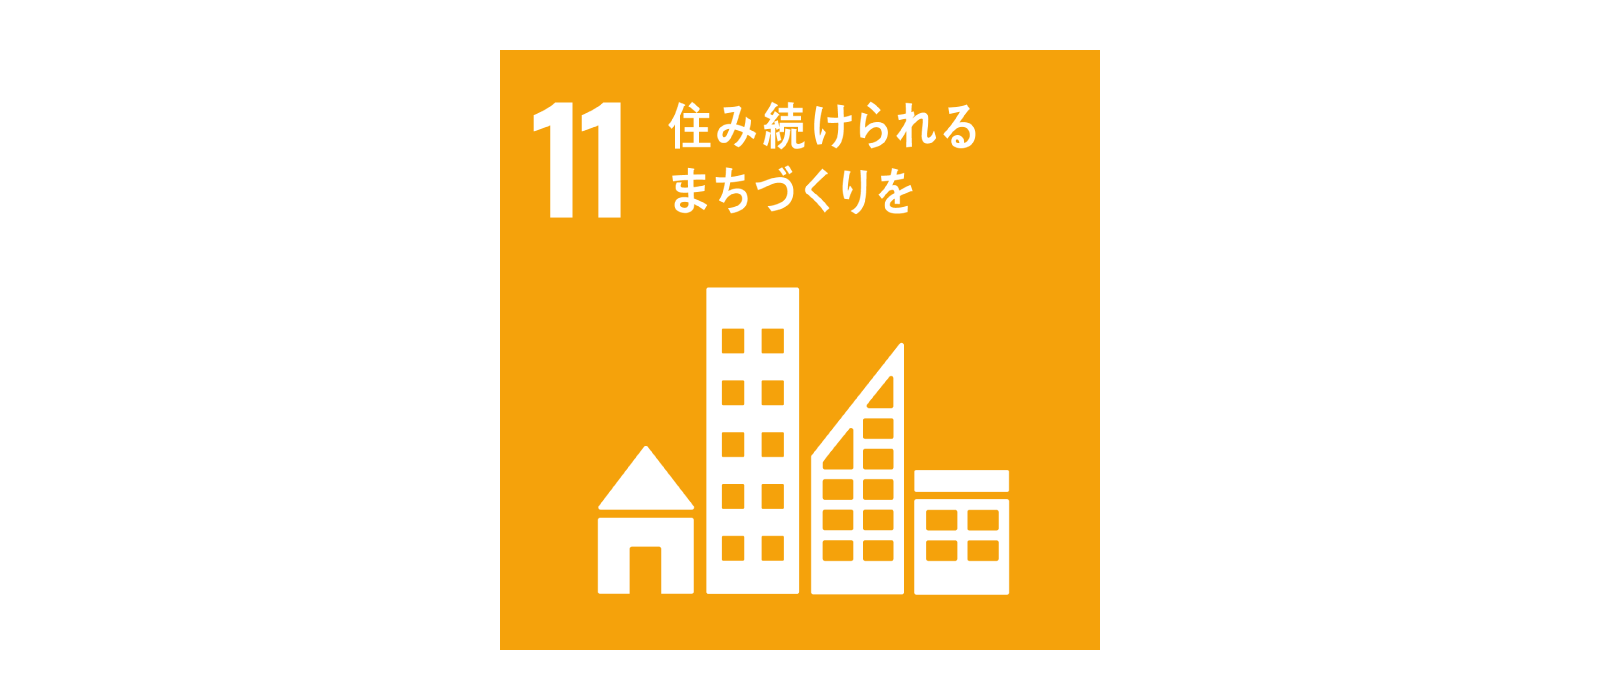 SDGs 目標11 住み続けられるまちづくりを